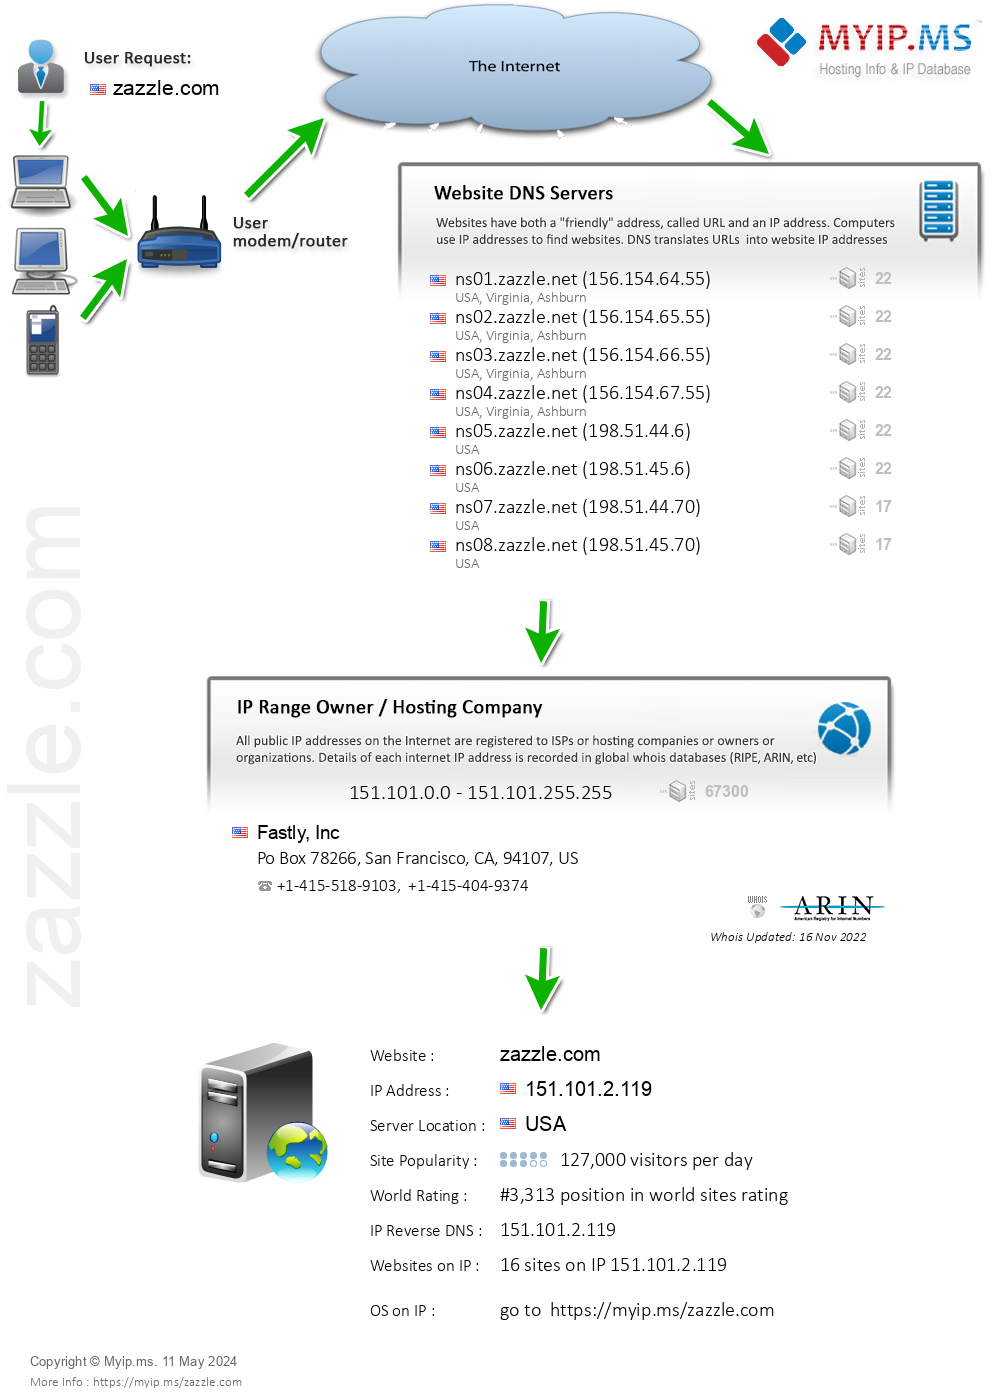 Zazzle.com - Website Hosting Visual IP Diagram